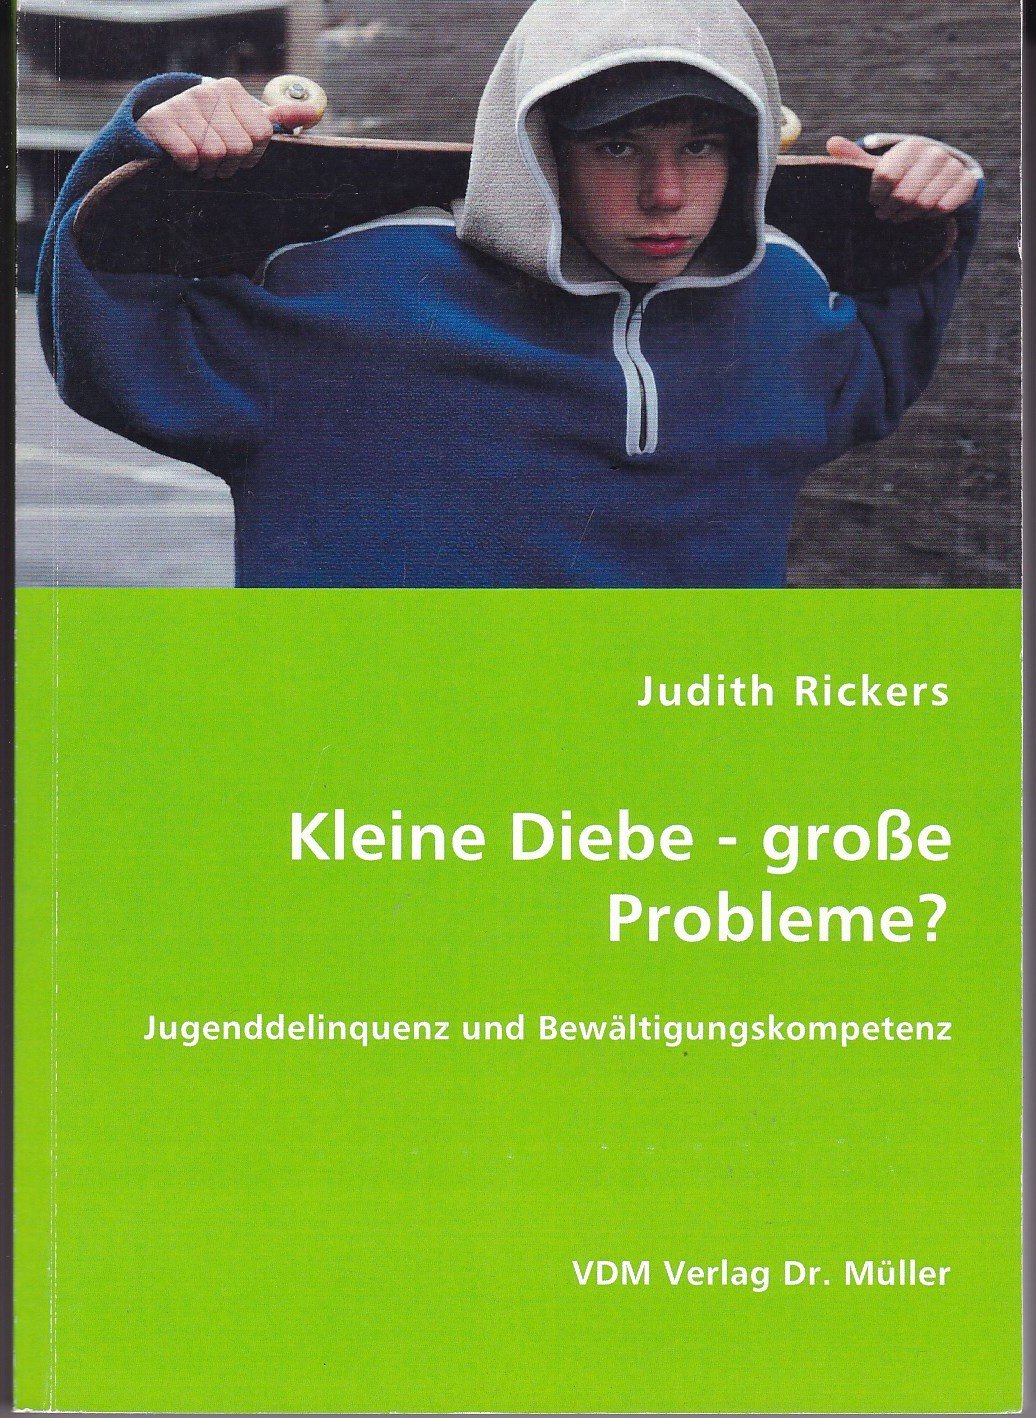 Kleine Diebe - große Probleme?“ (Judith Rickers) – Buch gebraucht kaufen –  A02fMBw101ZZs